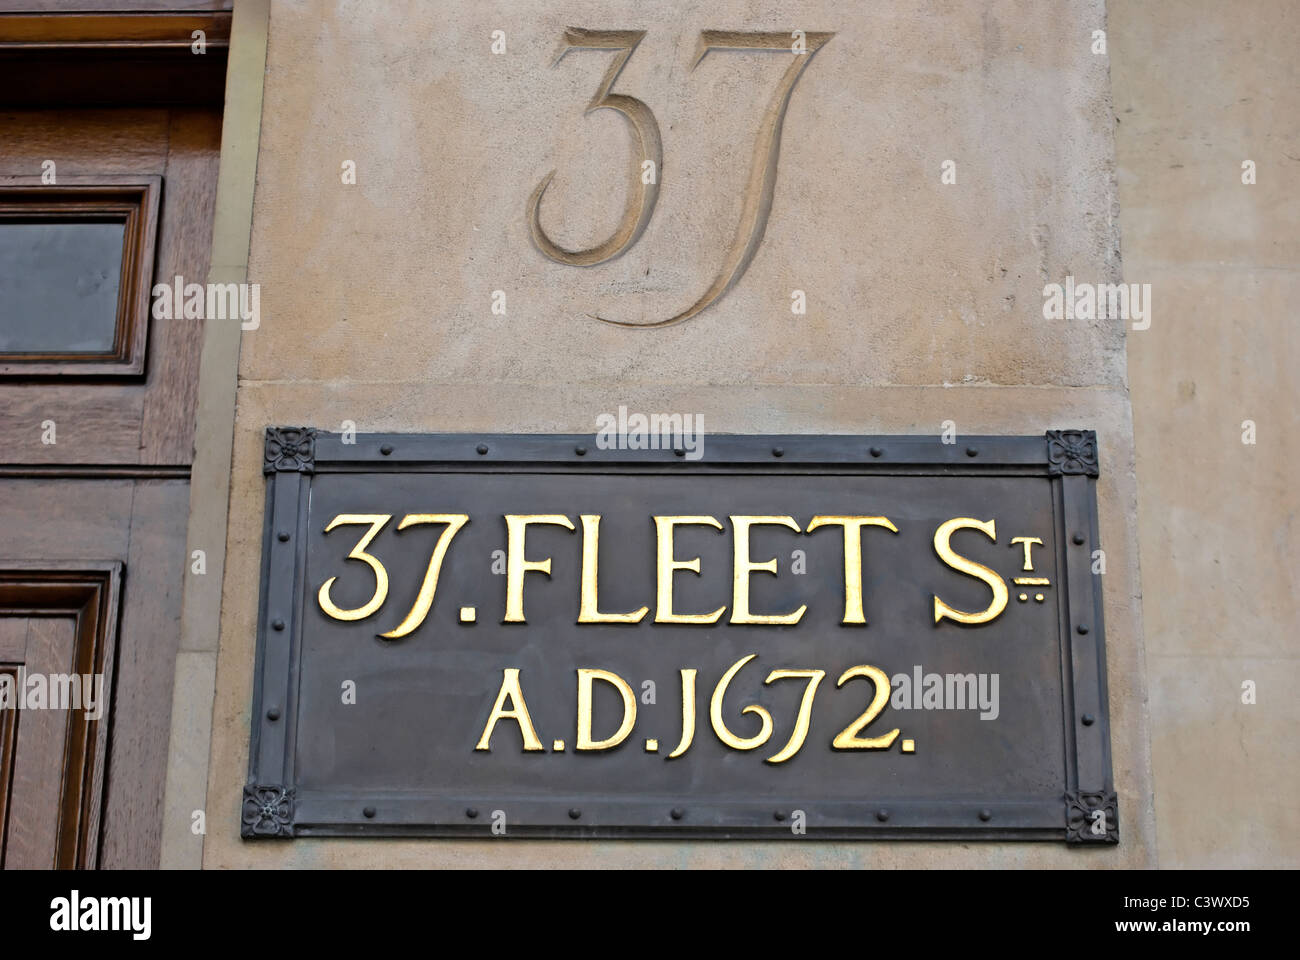 Inscrivez-vous au 37 Fleet Street, Londres, Angleterre, avec la date 1672 se référant à la fondation de la banque privée qui subsiste encore, hoare Banque D'Images